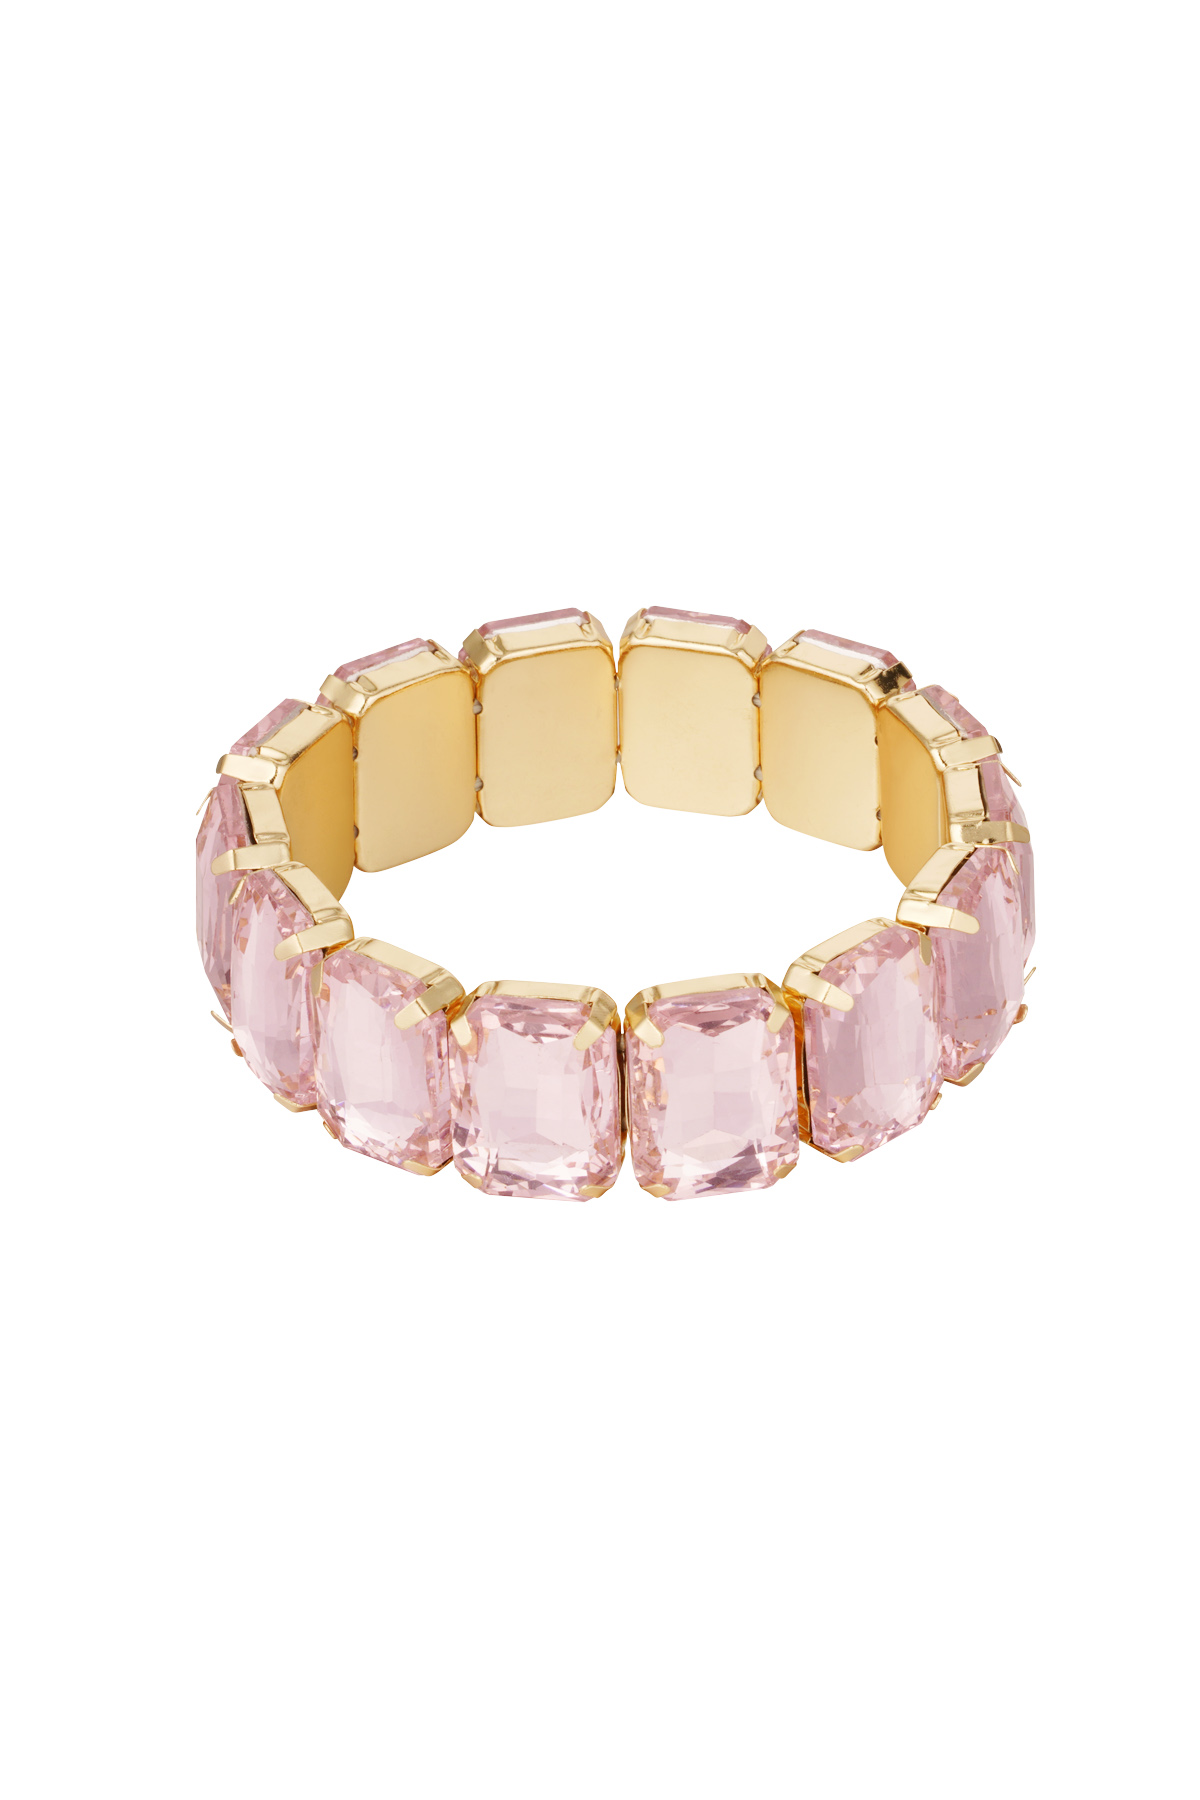 Slave bracelet large stones - gold/pink h5 